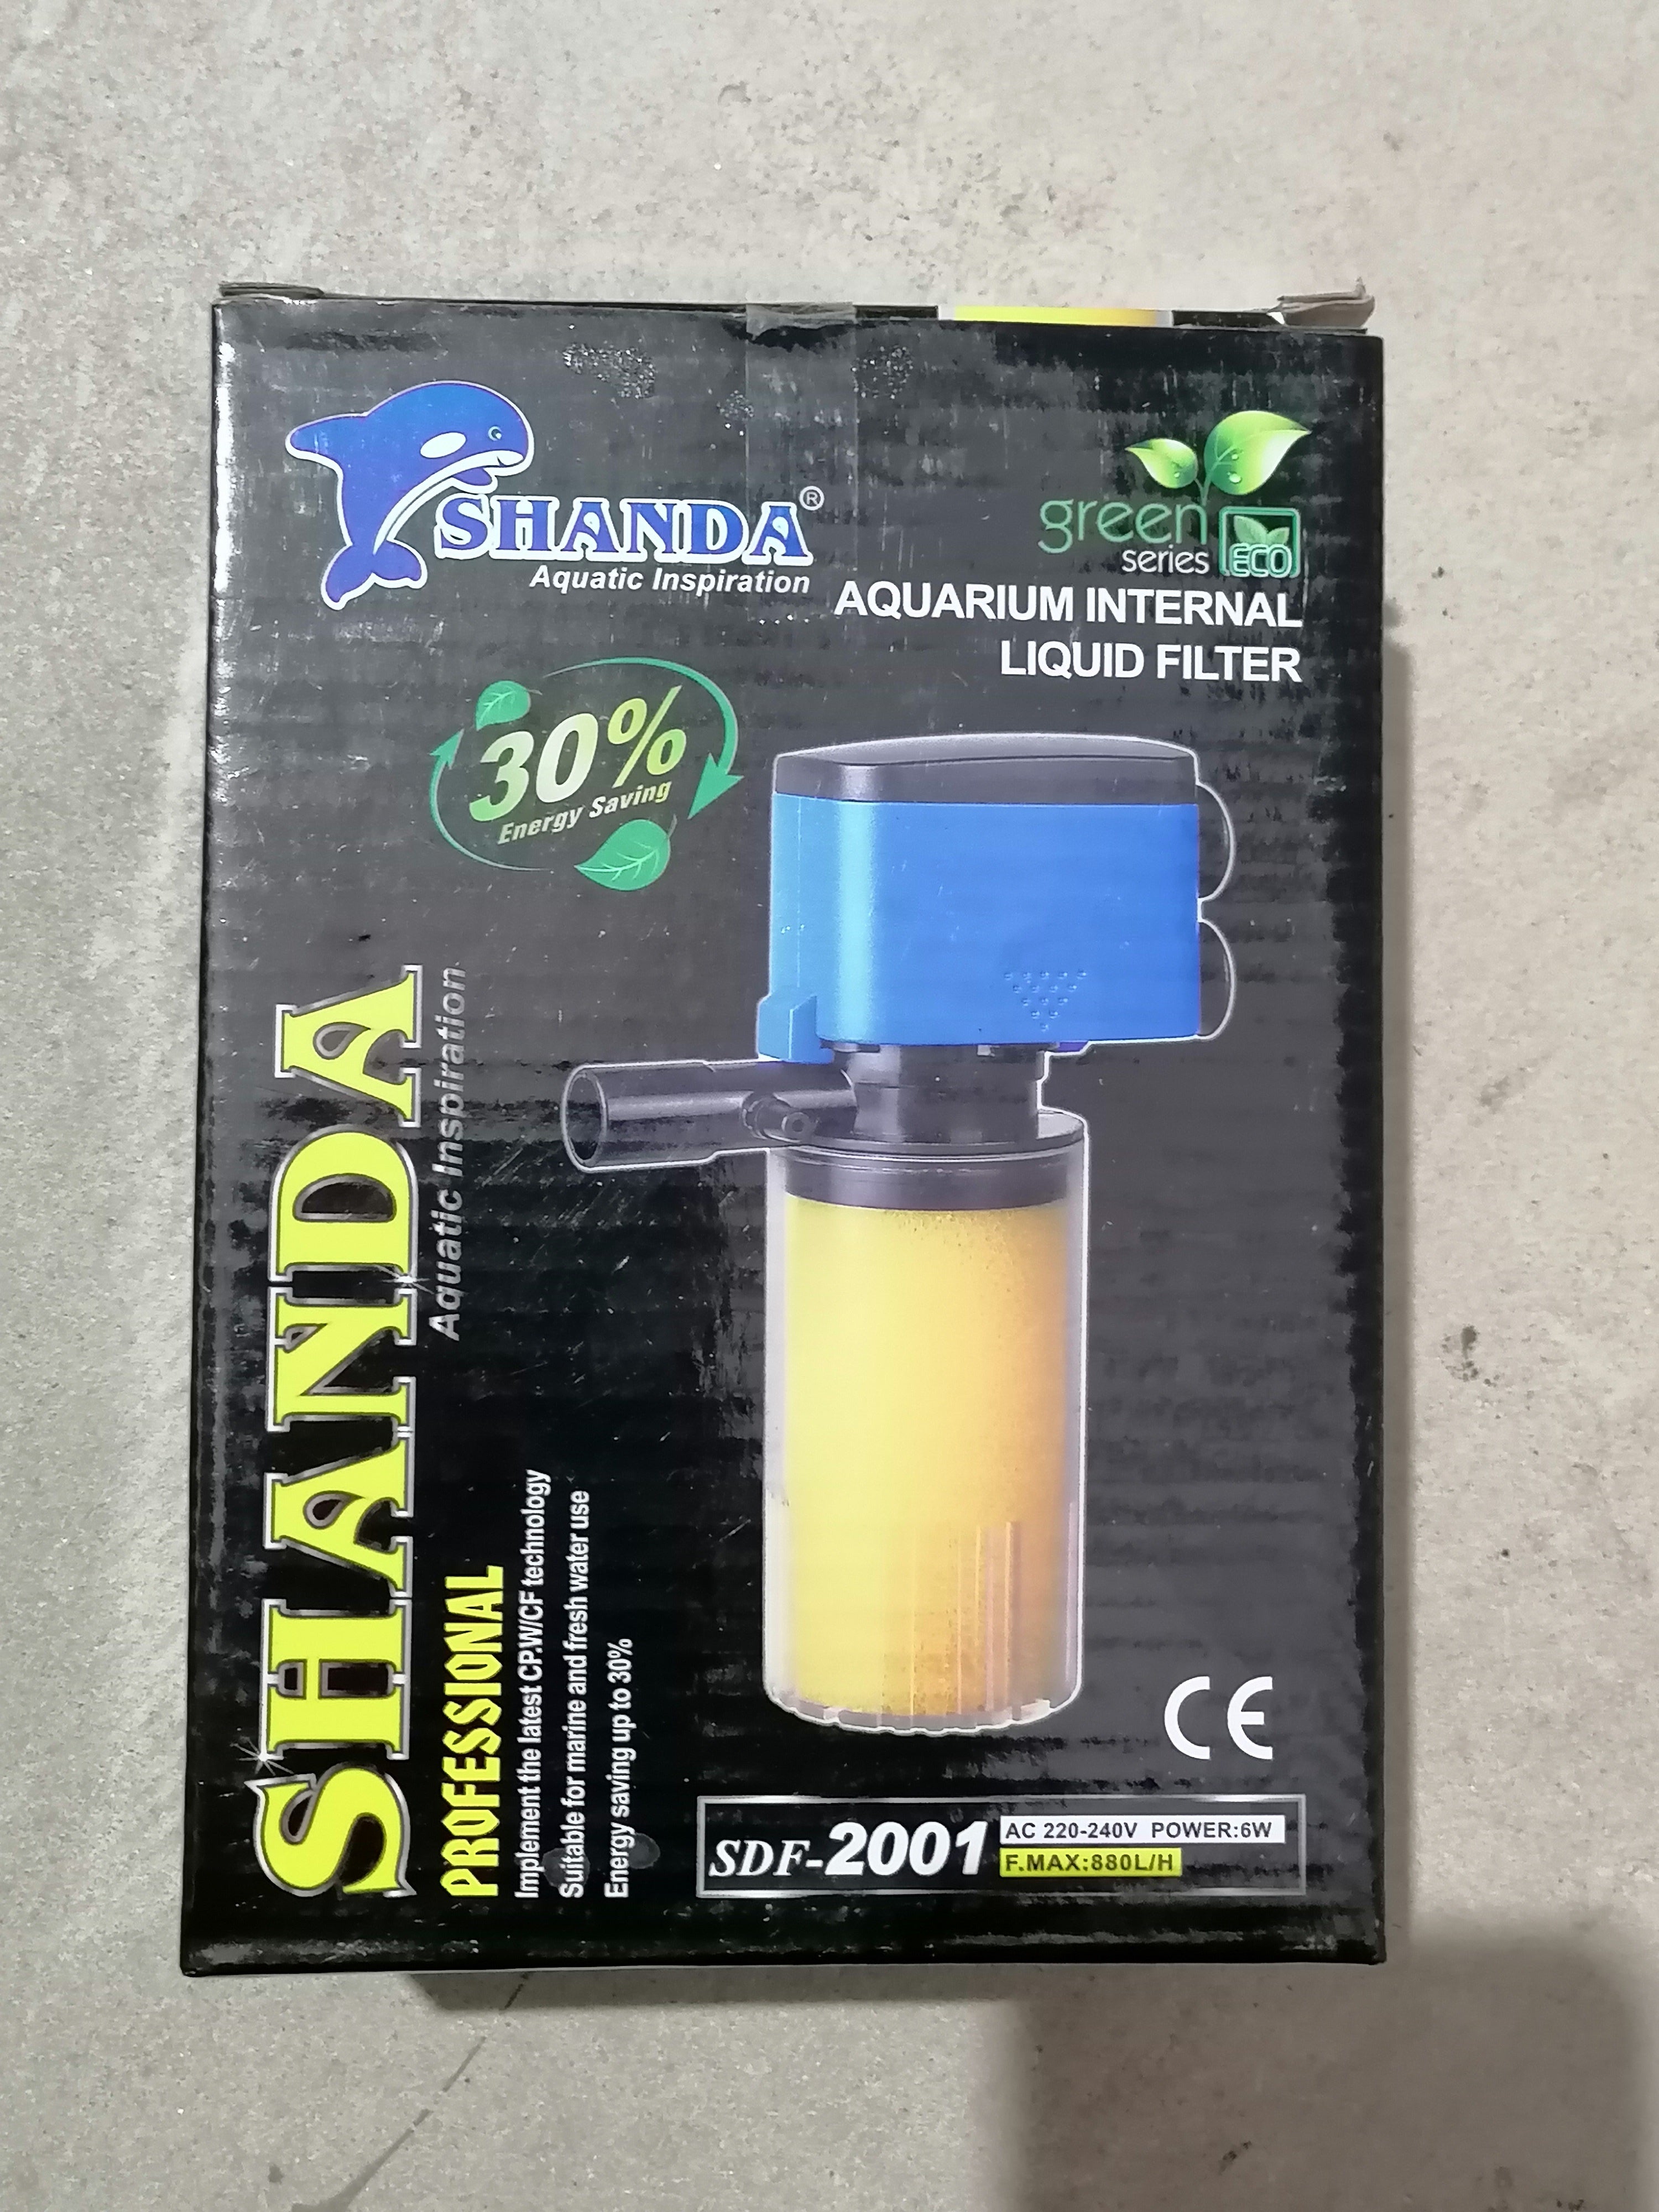 Shanda internal liquid filter